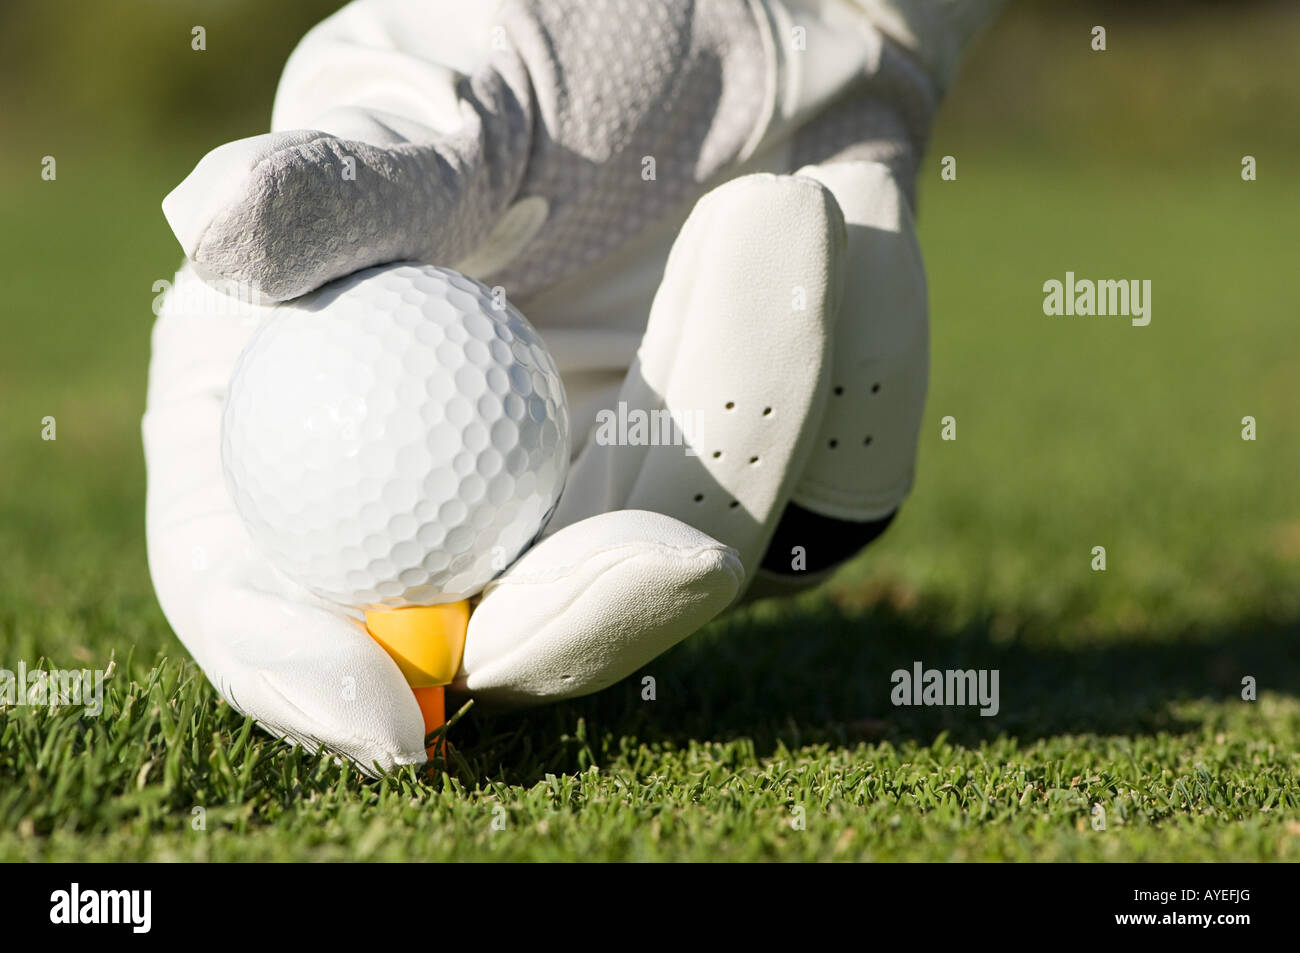 Una persona colocando una pelota de golf en un tee Foto de stock